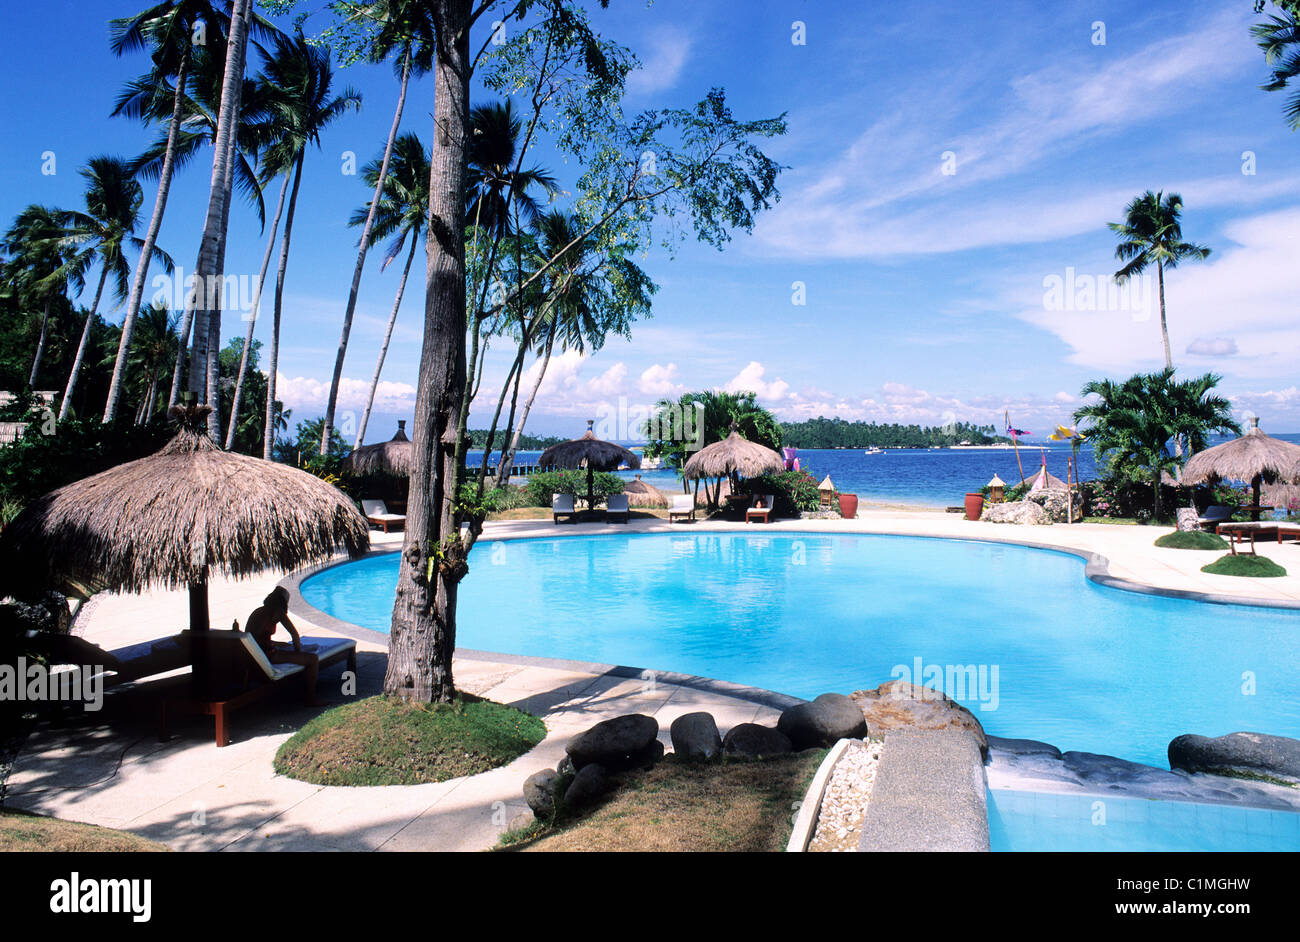 Philippines (Philippines), l'île de Mindanao, Davao, le Pearl Farm beach resort sur l'île de Samal Banque D'Images